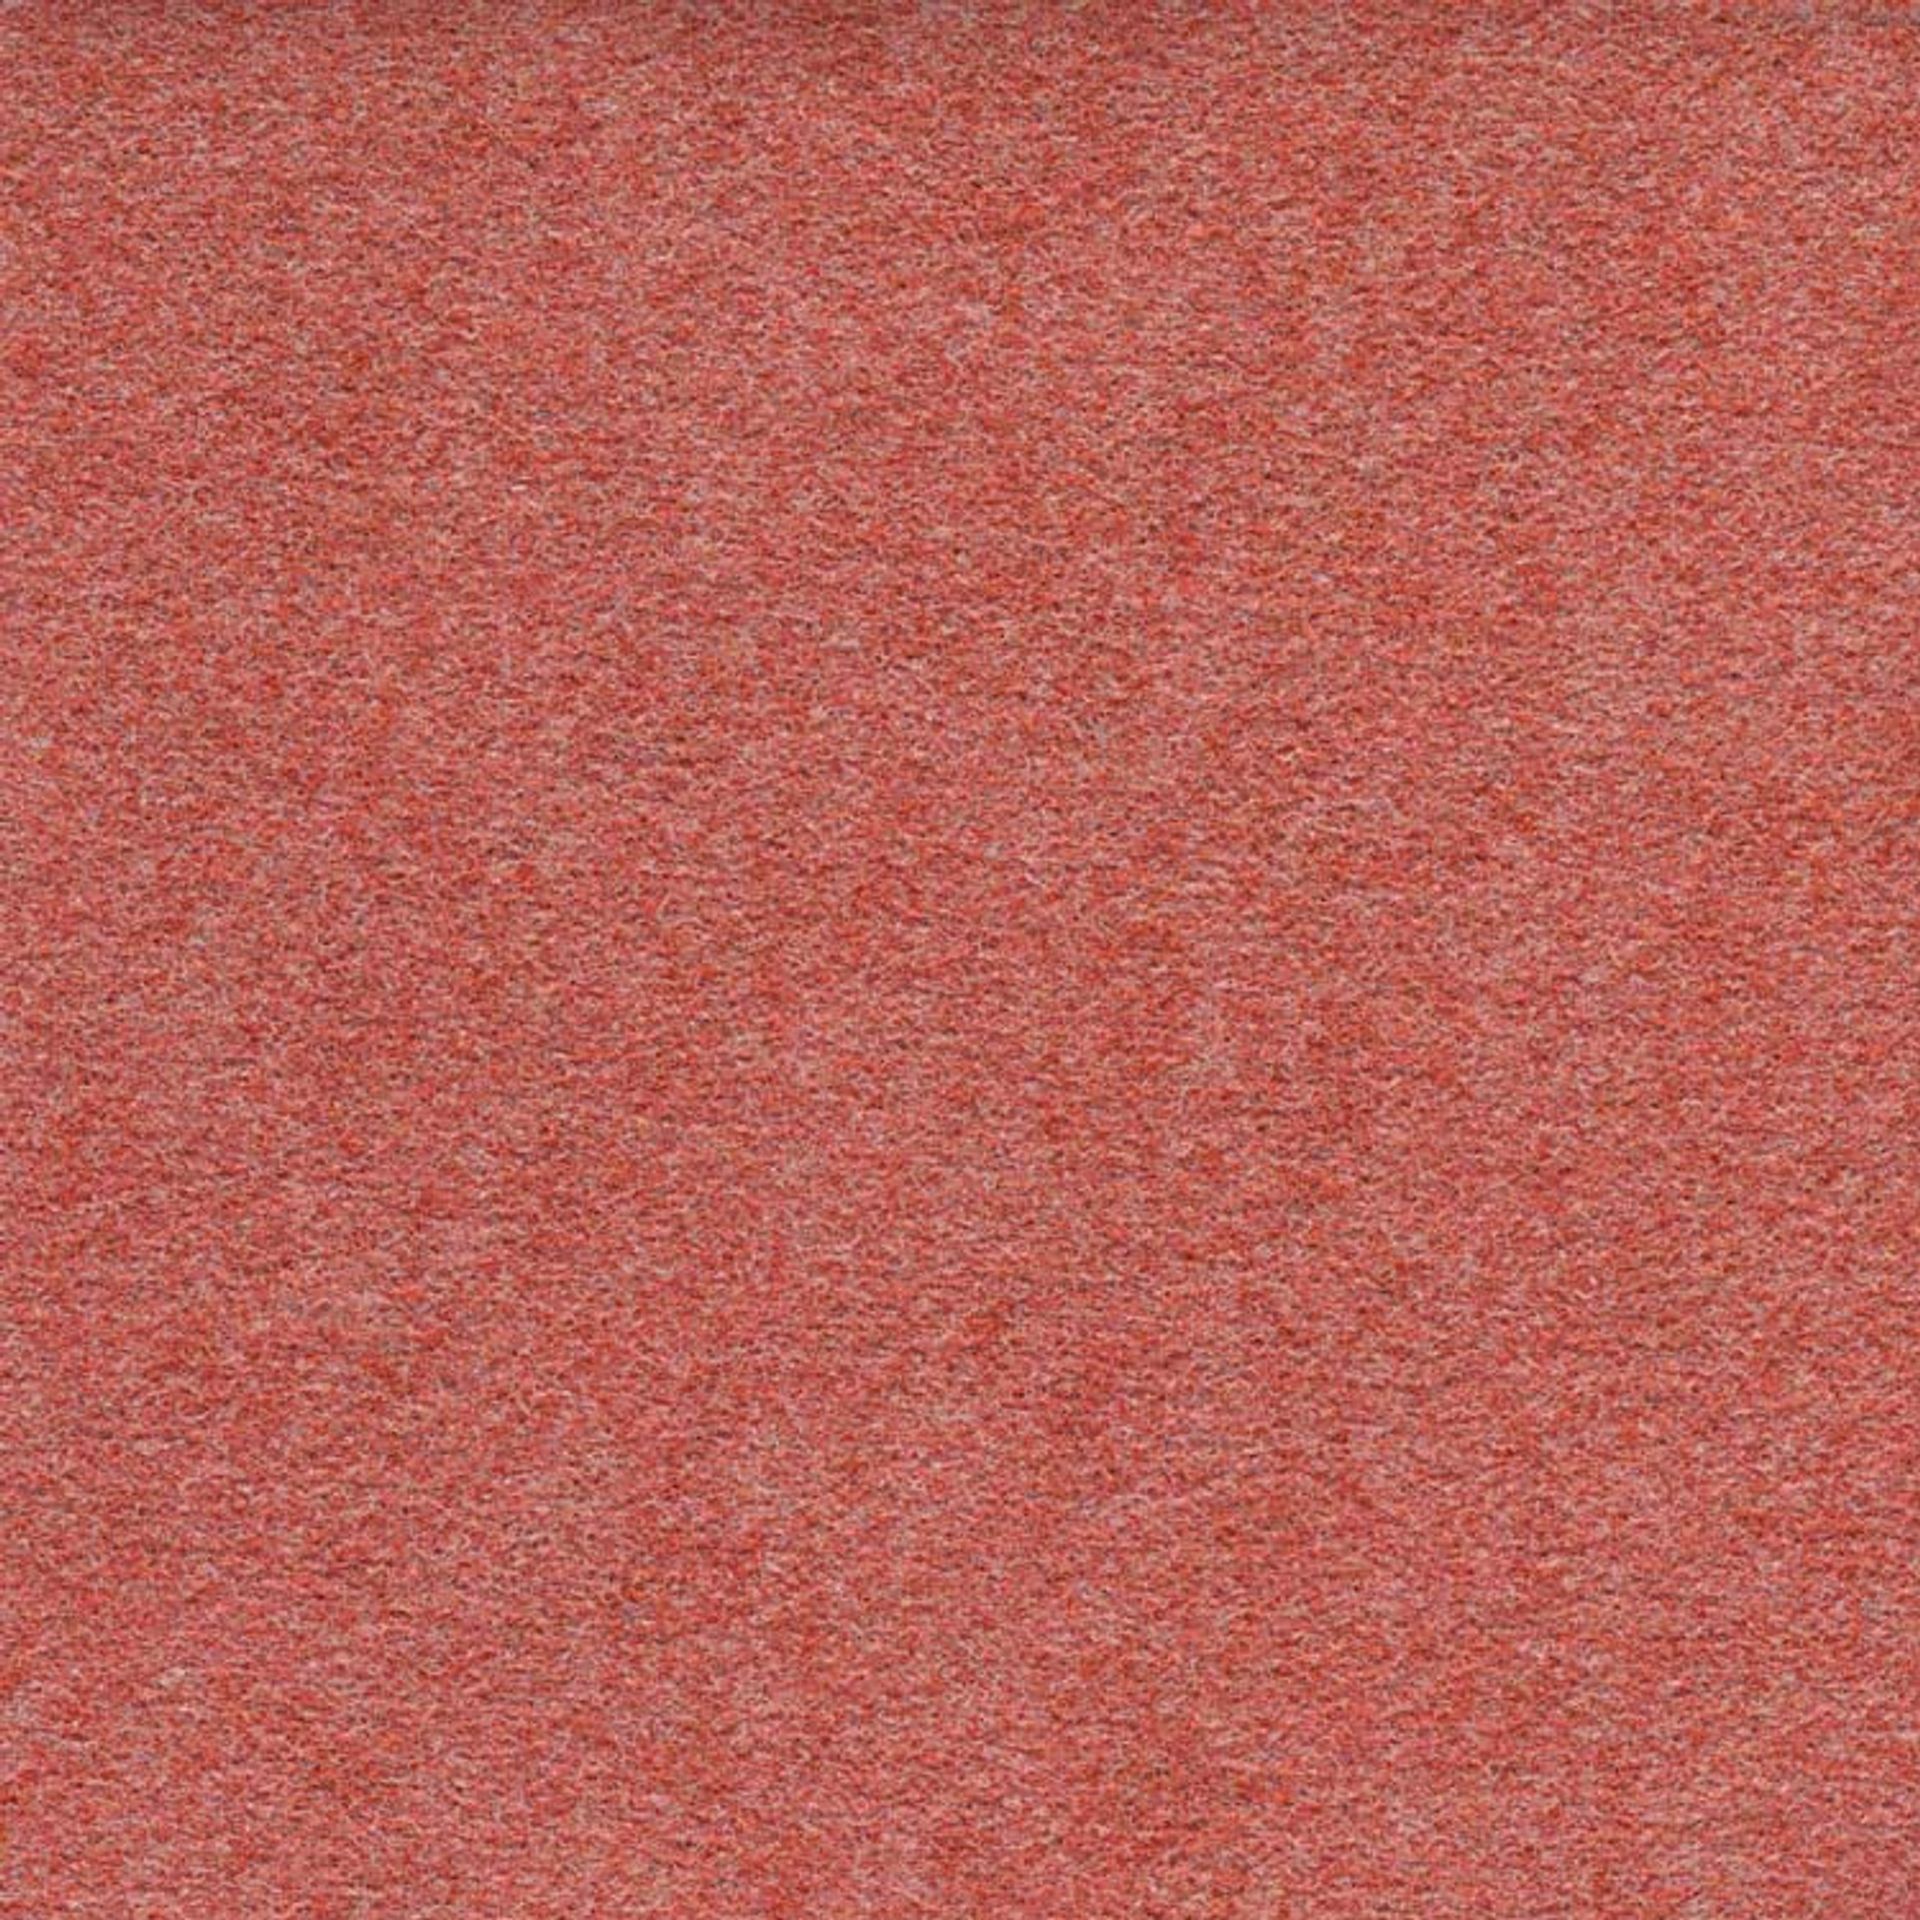 Teppichfliesen 50 x 50 cm Nadelvlies FINETT DIMENSION farbige größe f509108